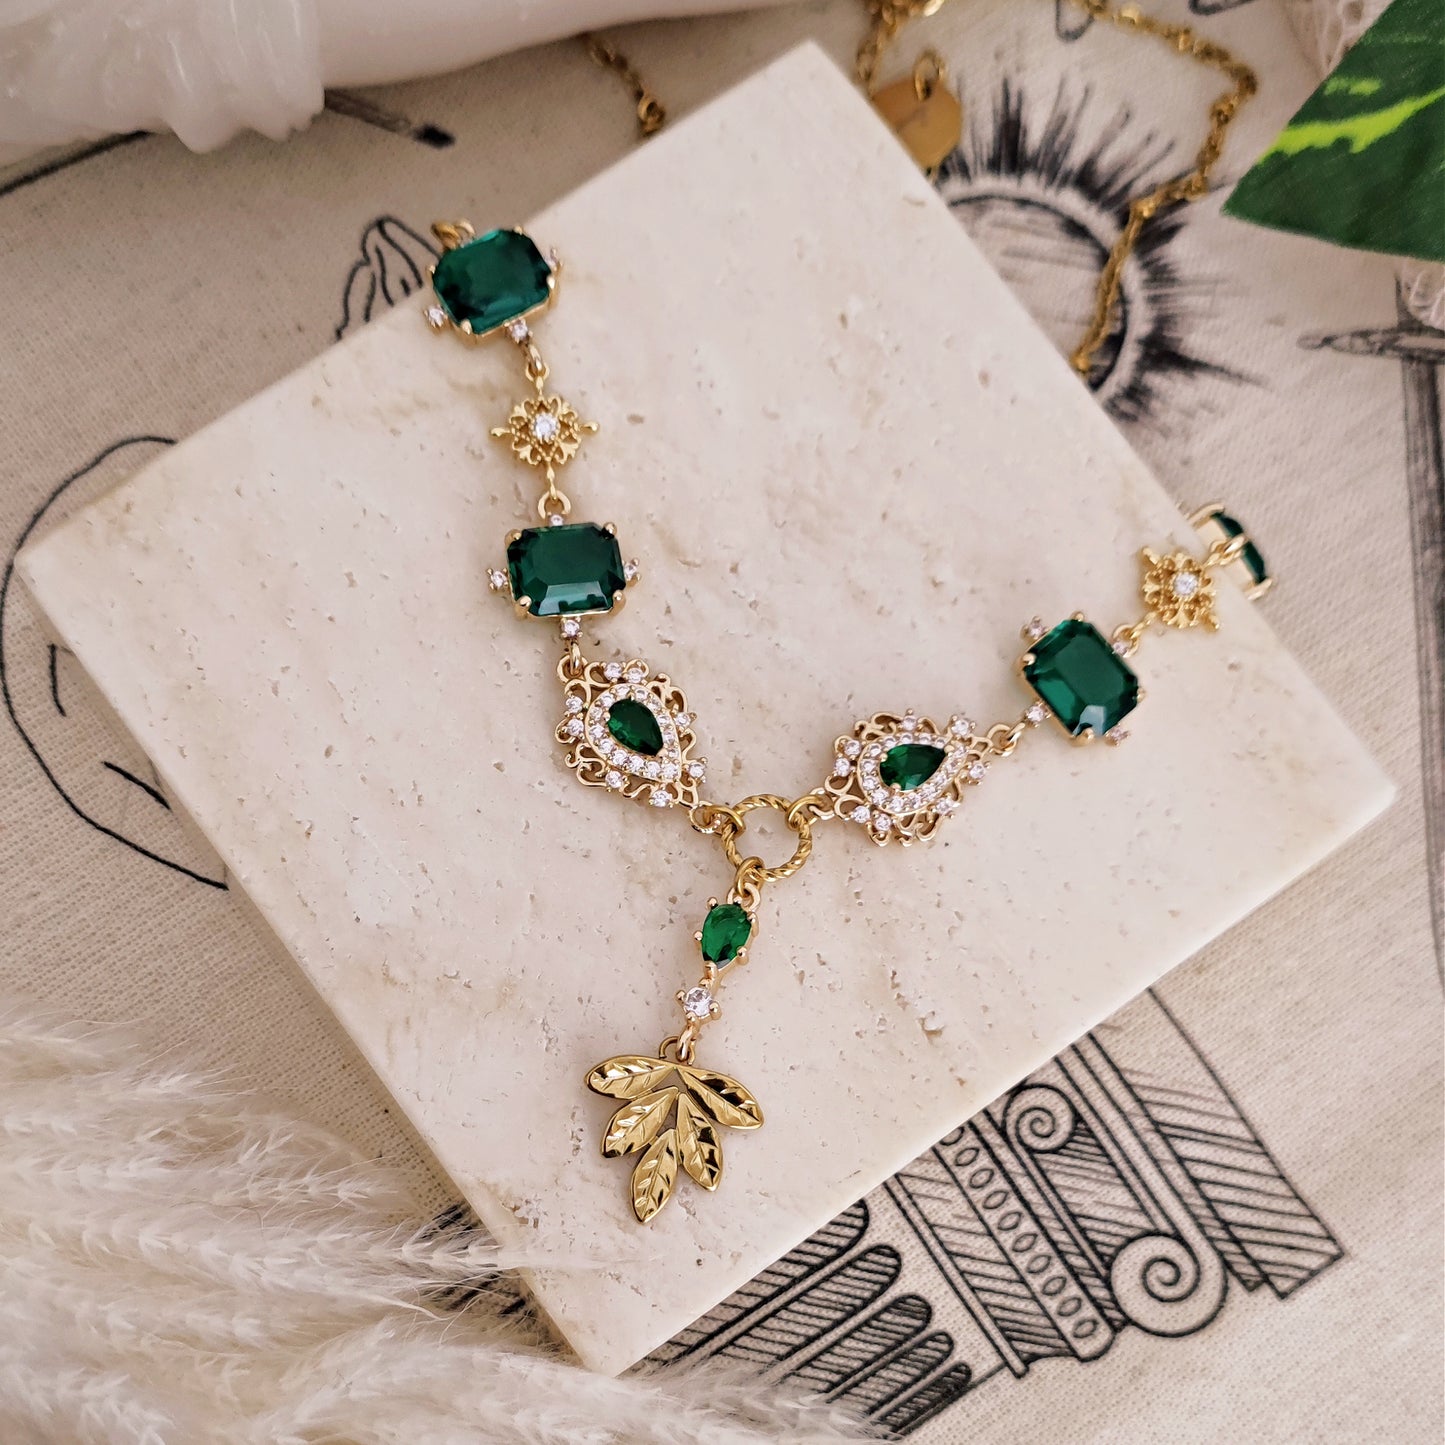 Choker necklace "Demeter" emerald green